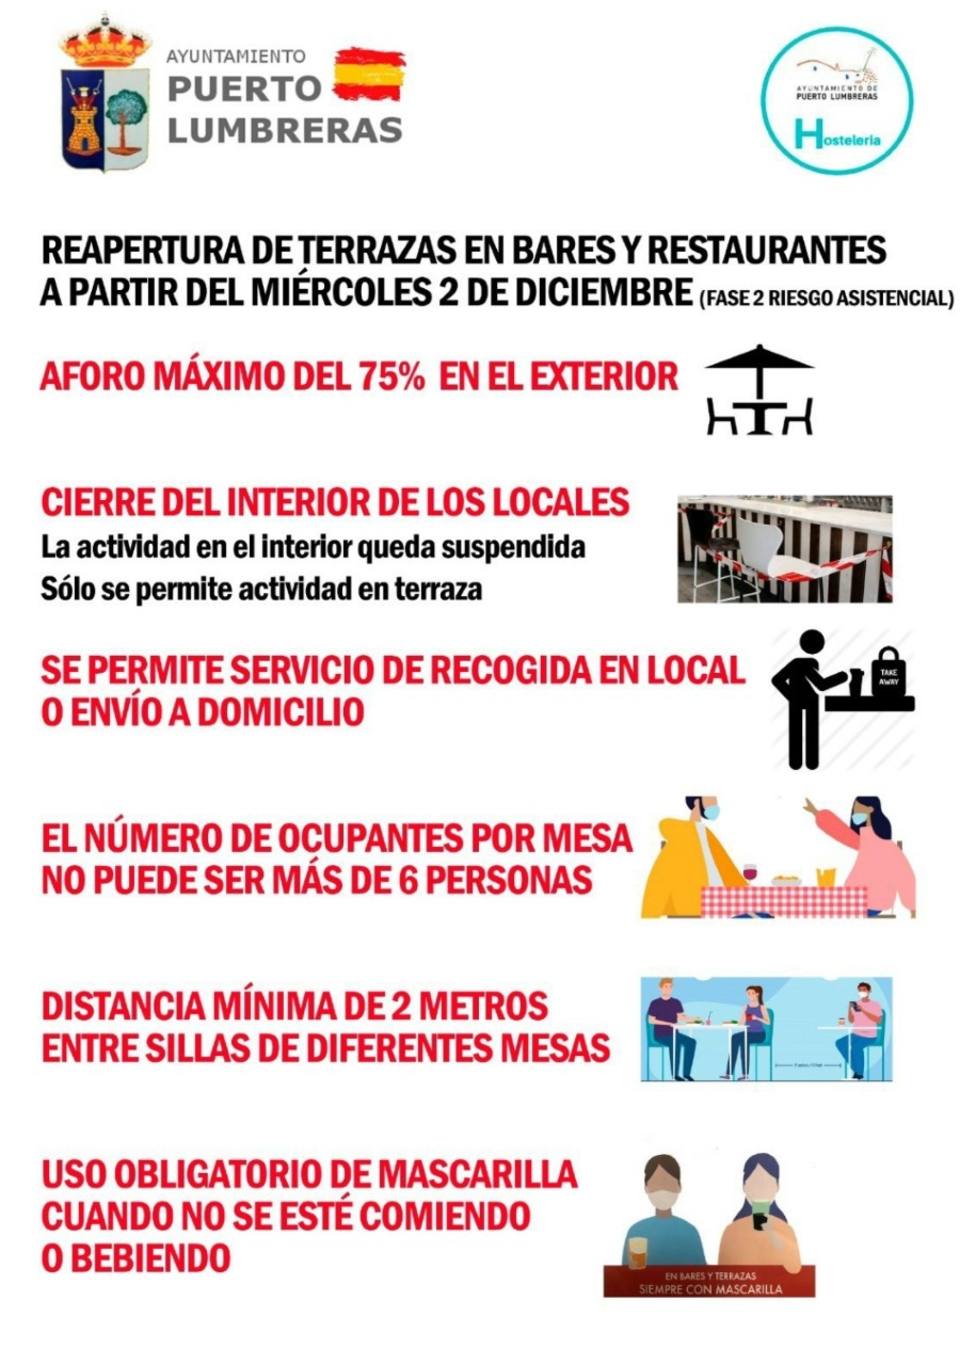 Puerto Lumbreras podrá abrir terrazas de establecimientos al 75%